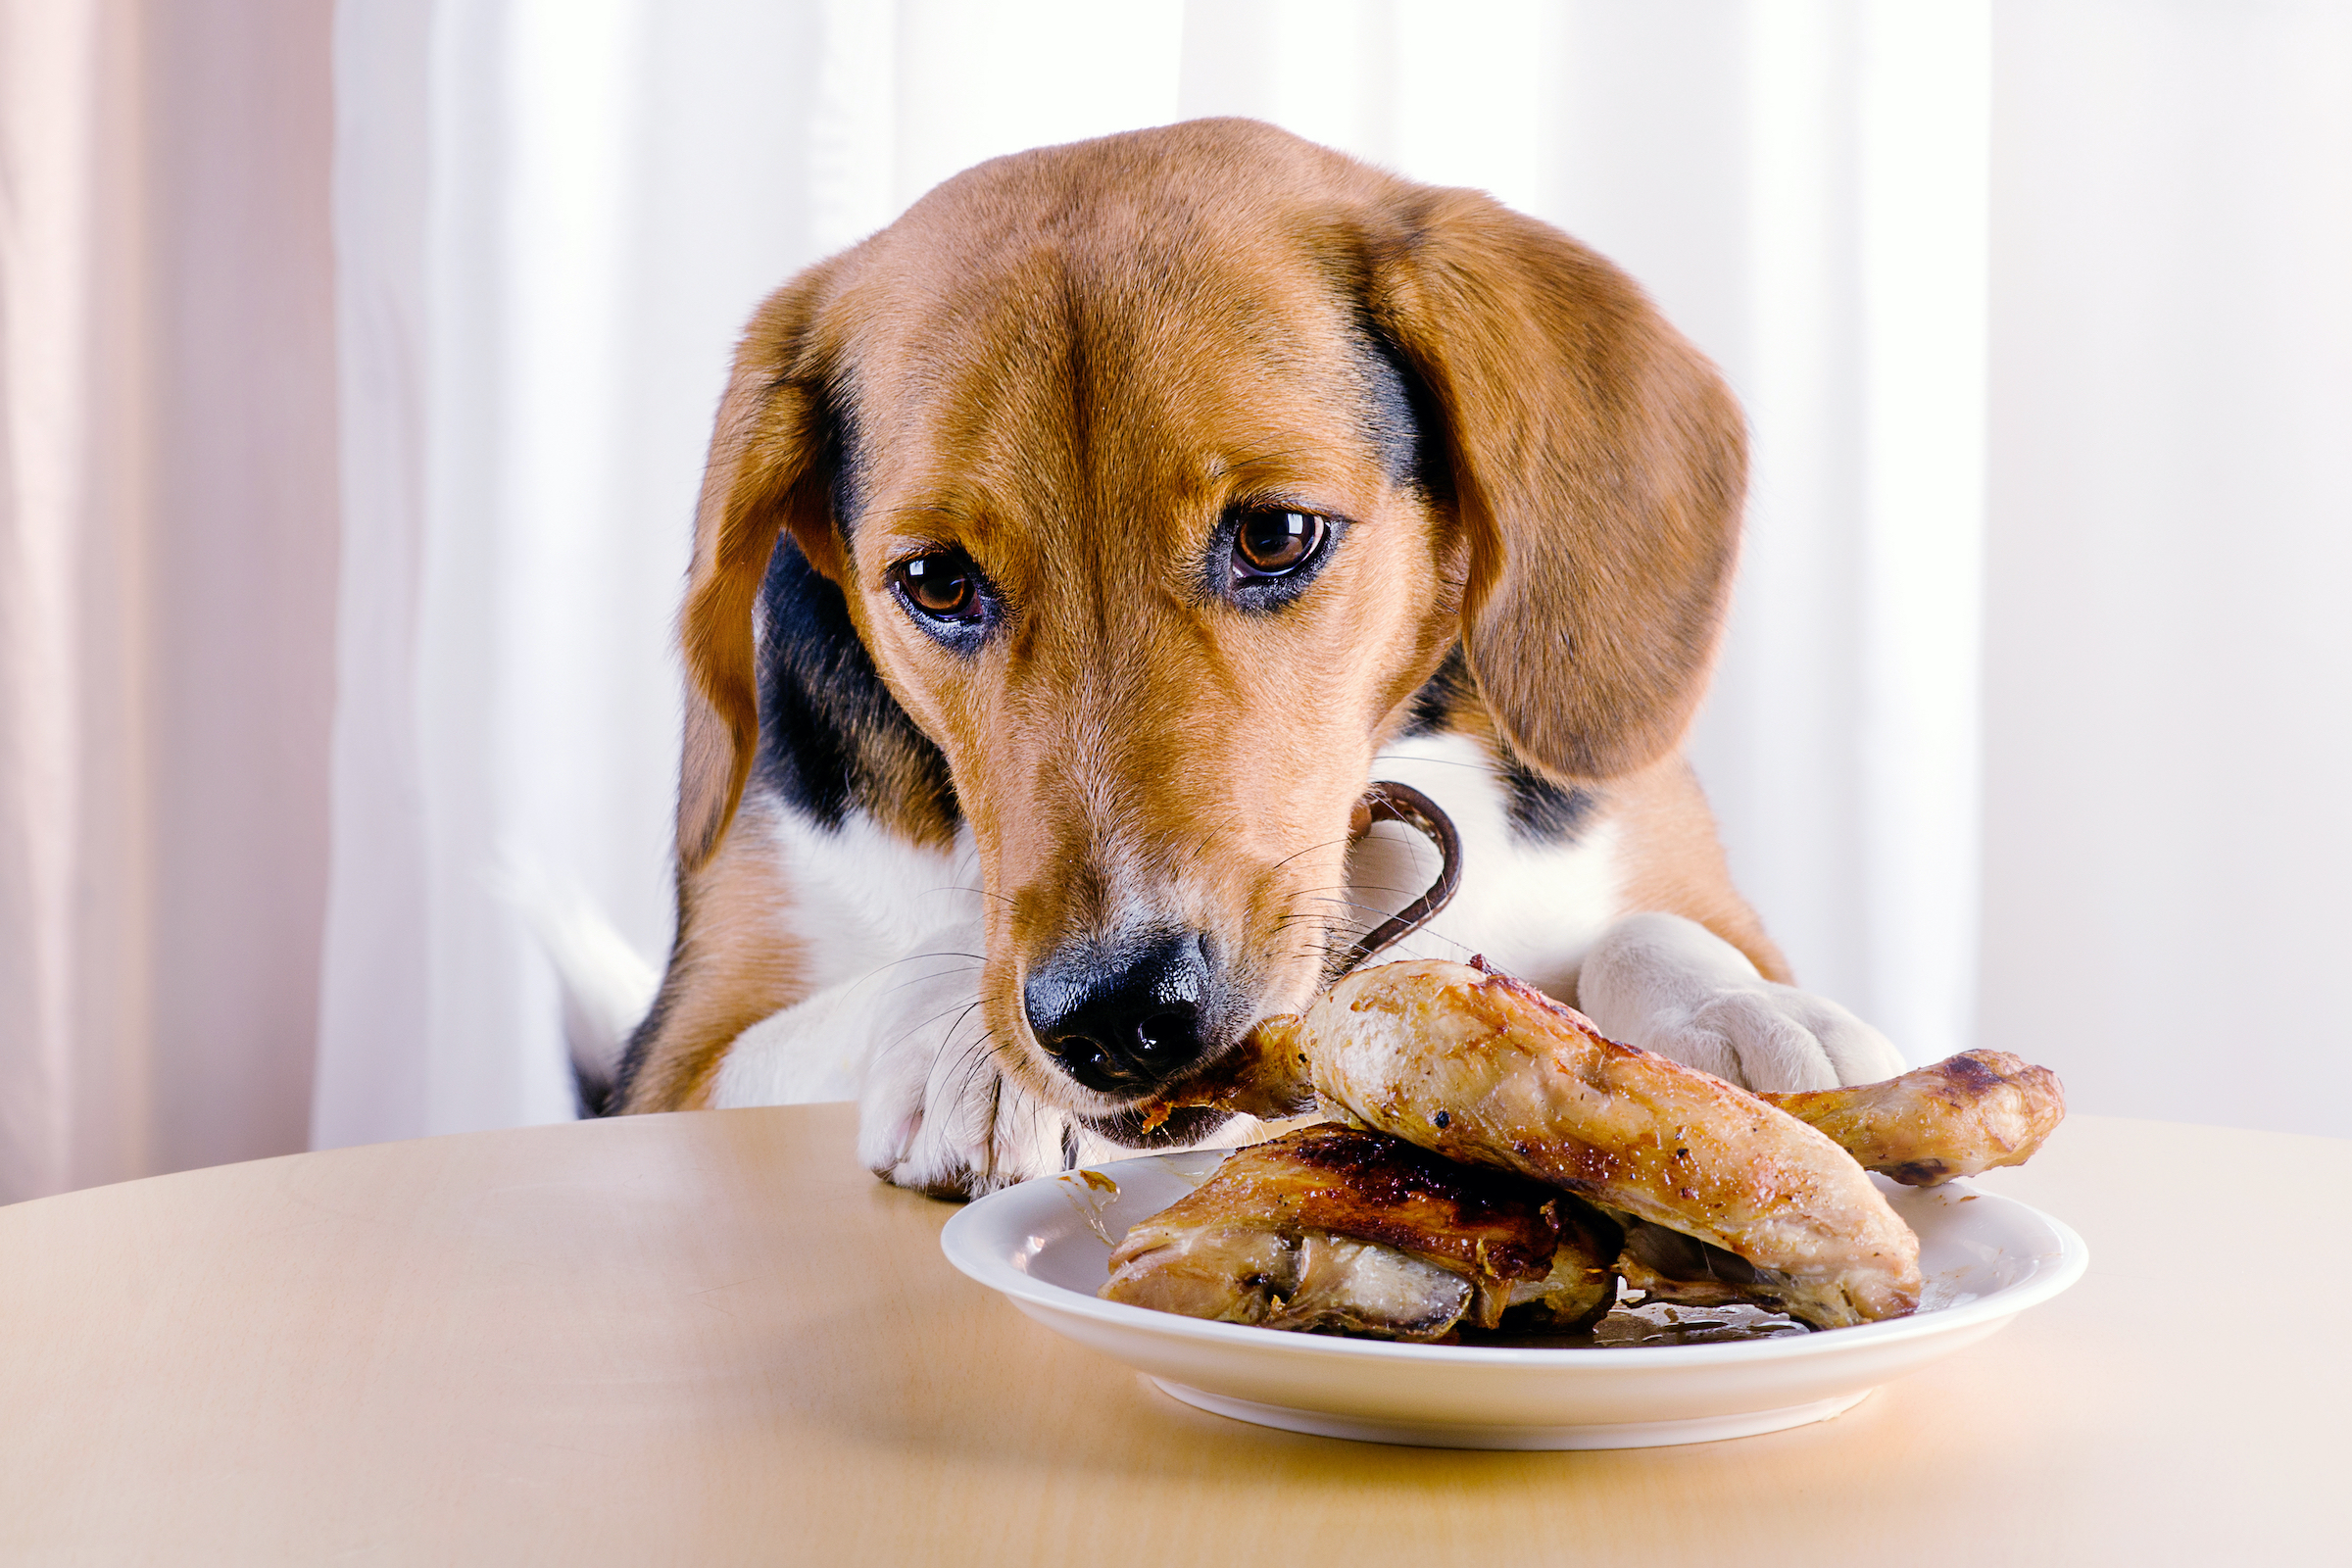 Your pet big. Животные и еда. Собака завтракает. Собачья еда. Диетотерапия животных.